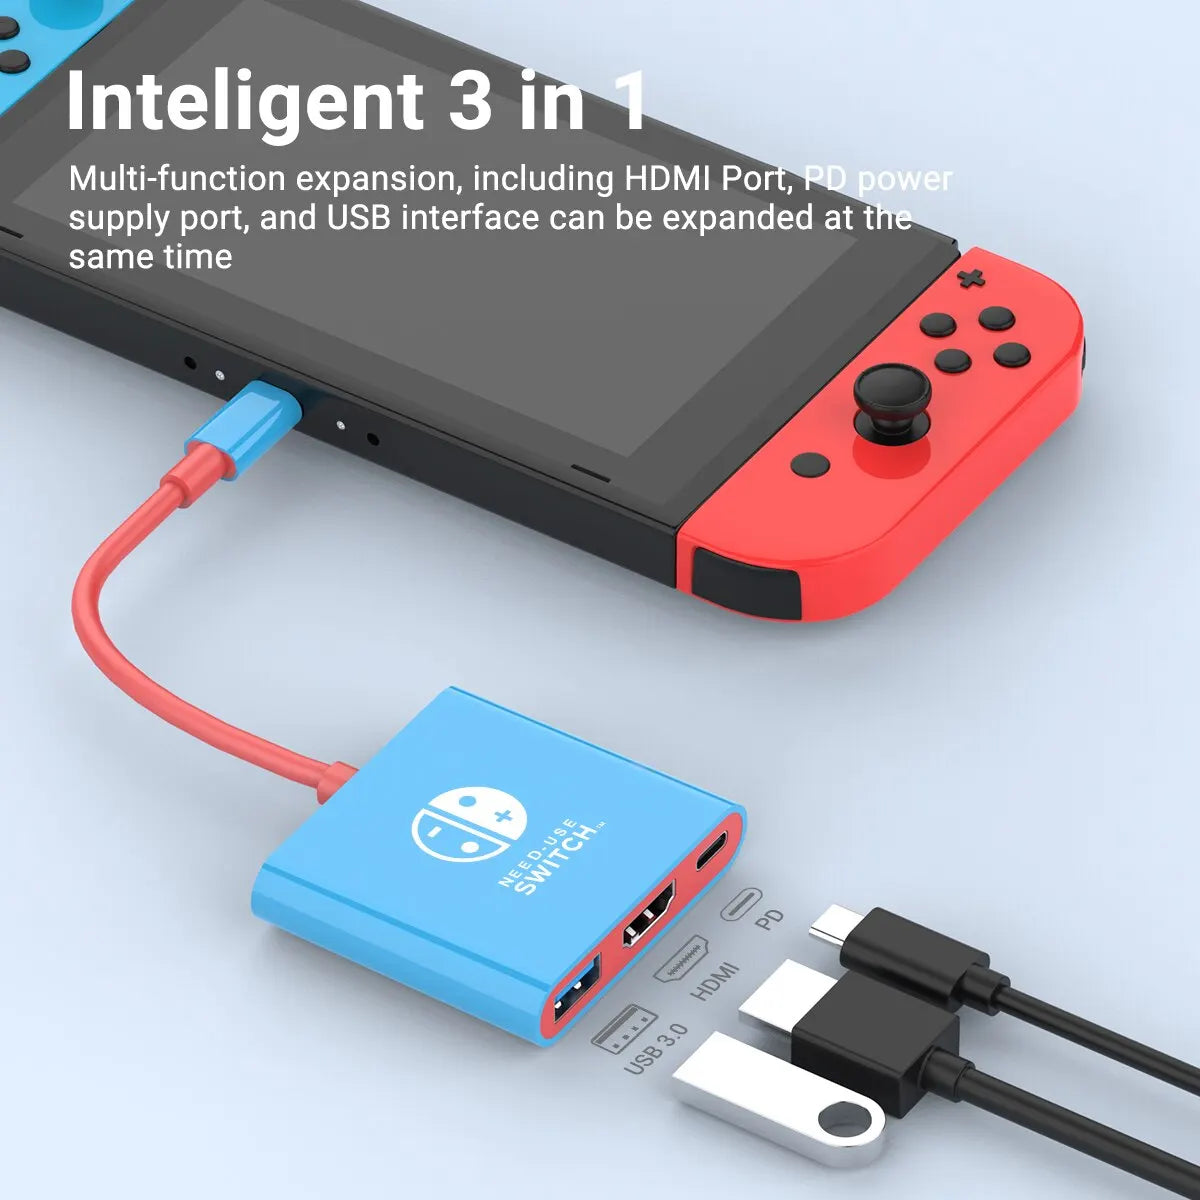 Nintendo Switch Portable Hub: HDMI & USB 3.0 for Seamless Gaming  ourlum.com   